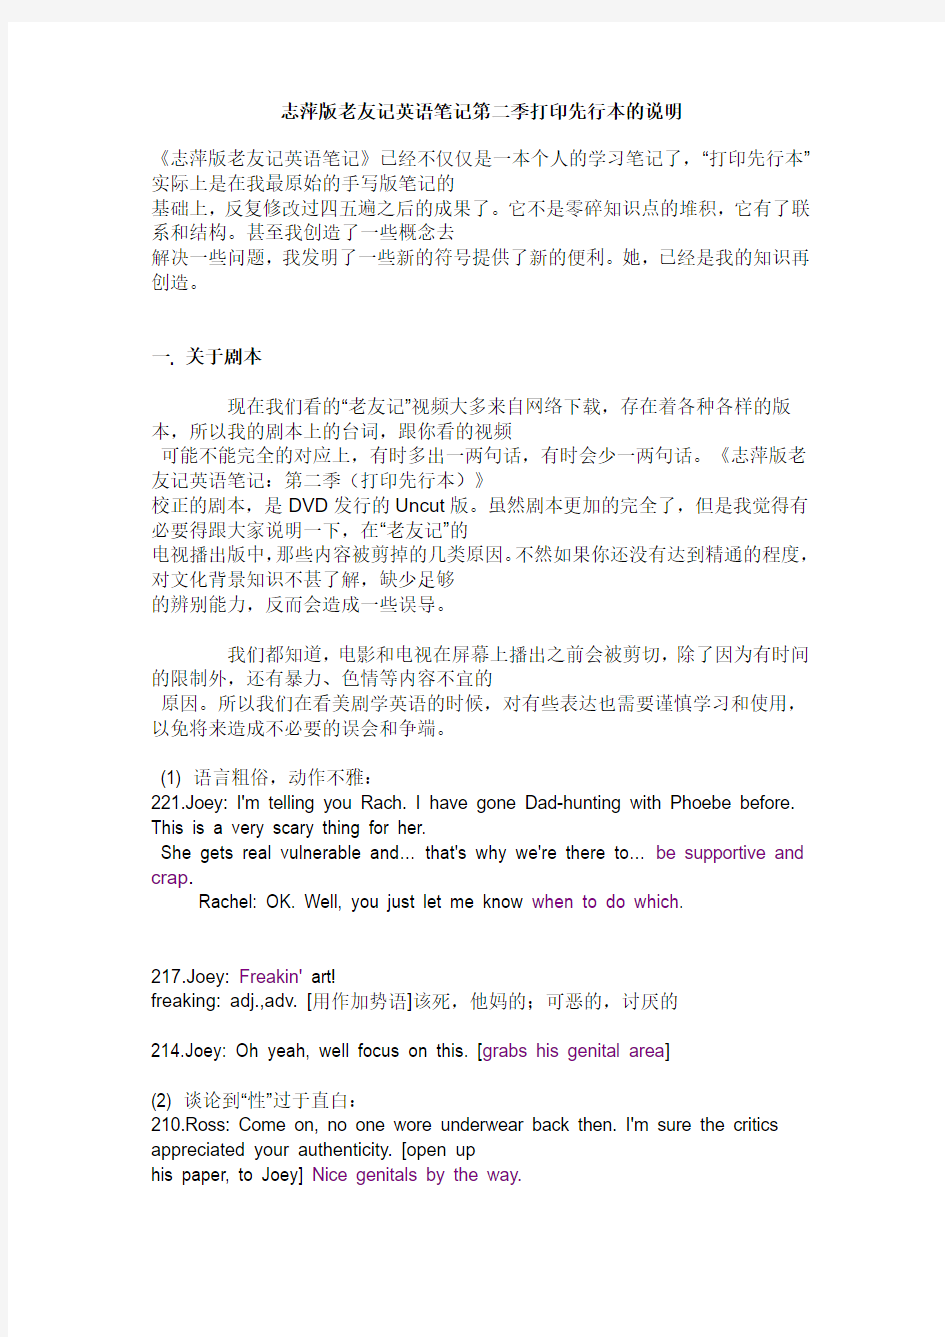 志萍版老友记英语笔记第二季打印先行本的说明